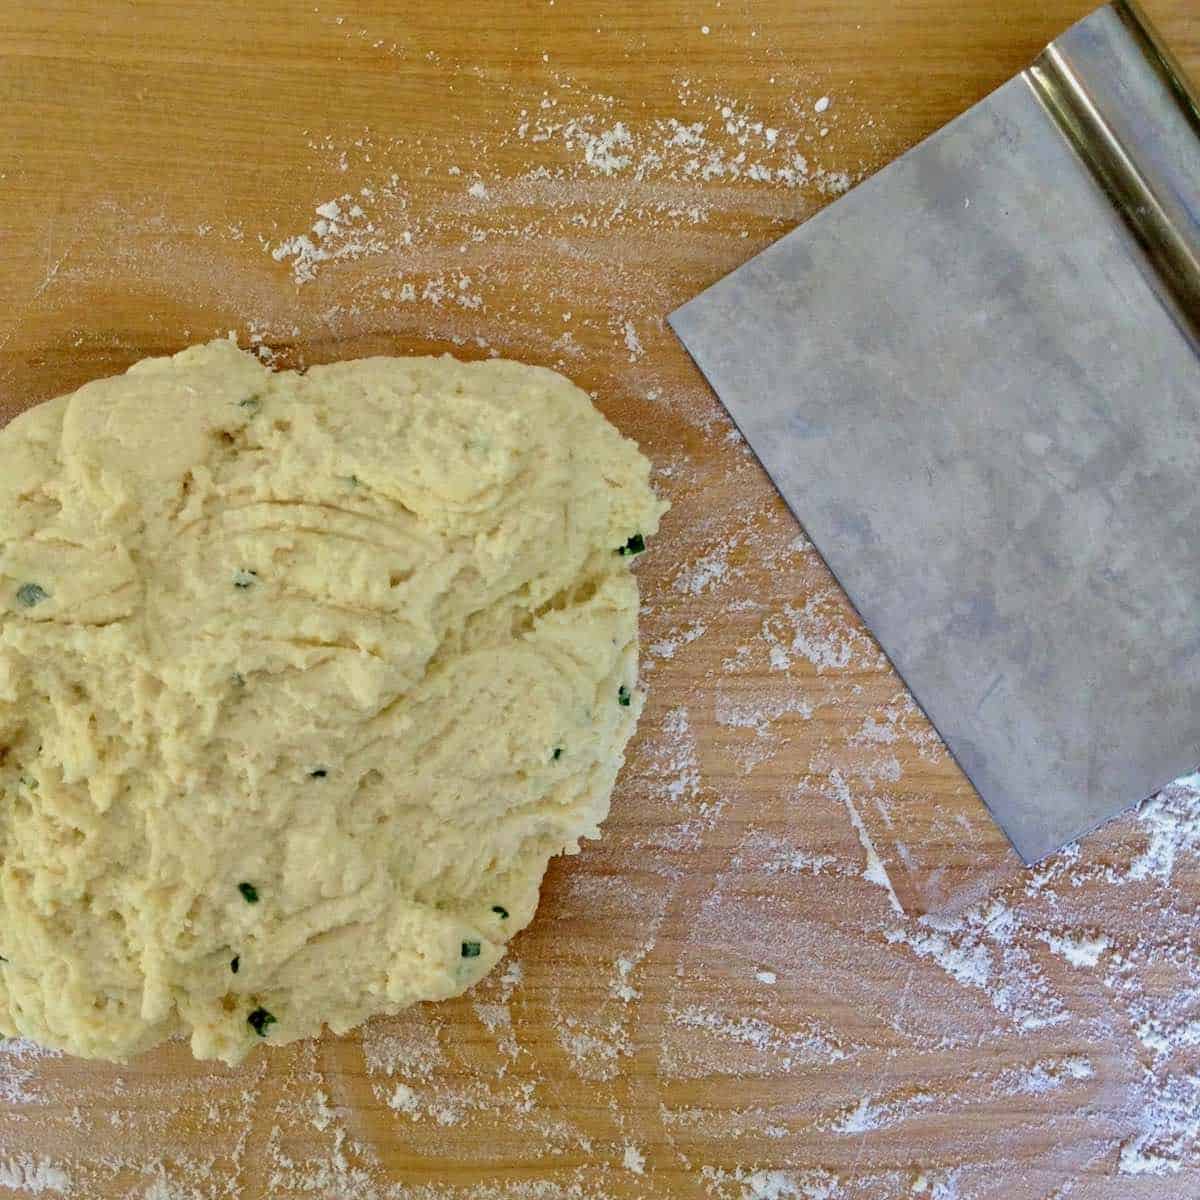 Gnocchi dough and scraper.